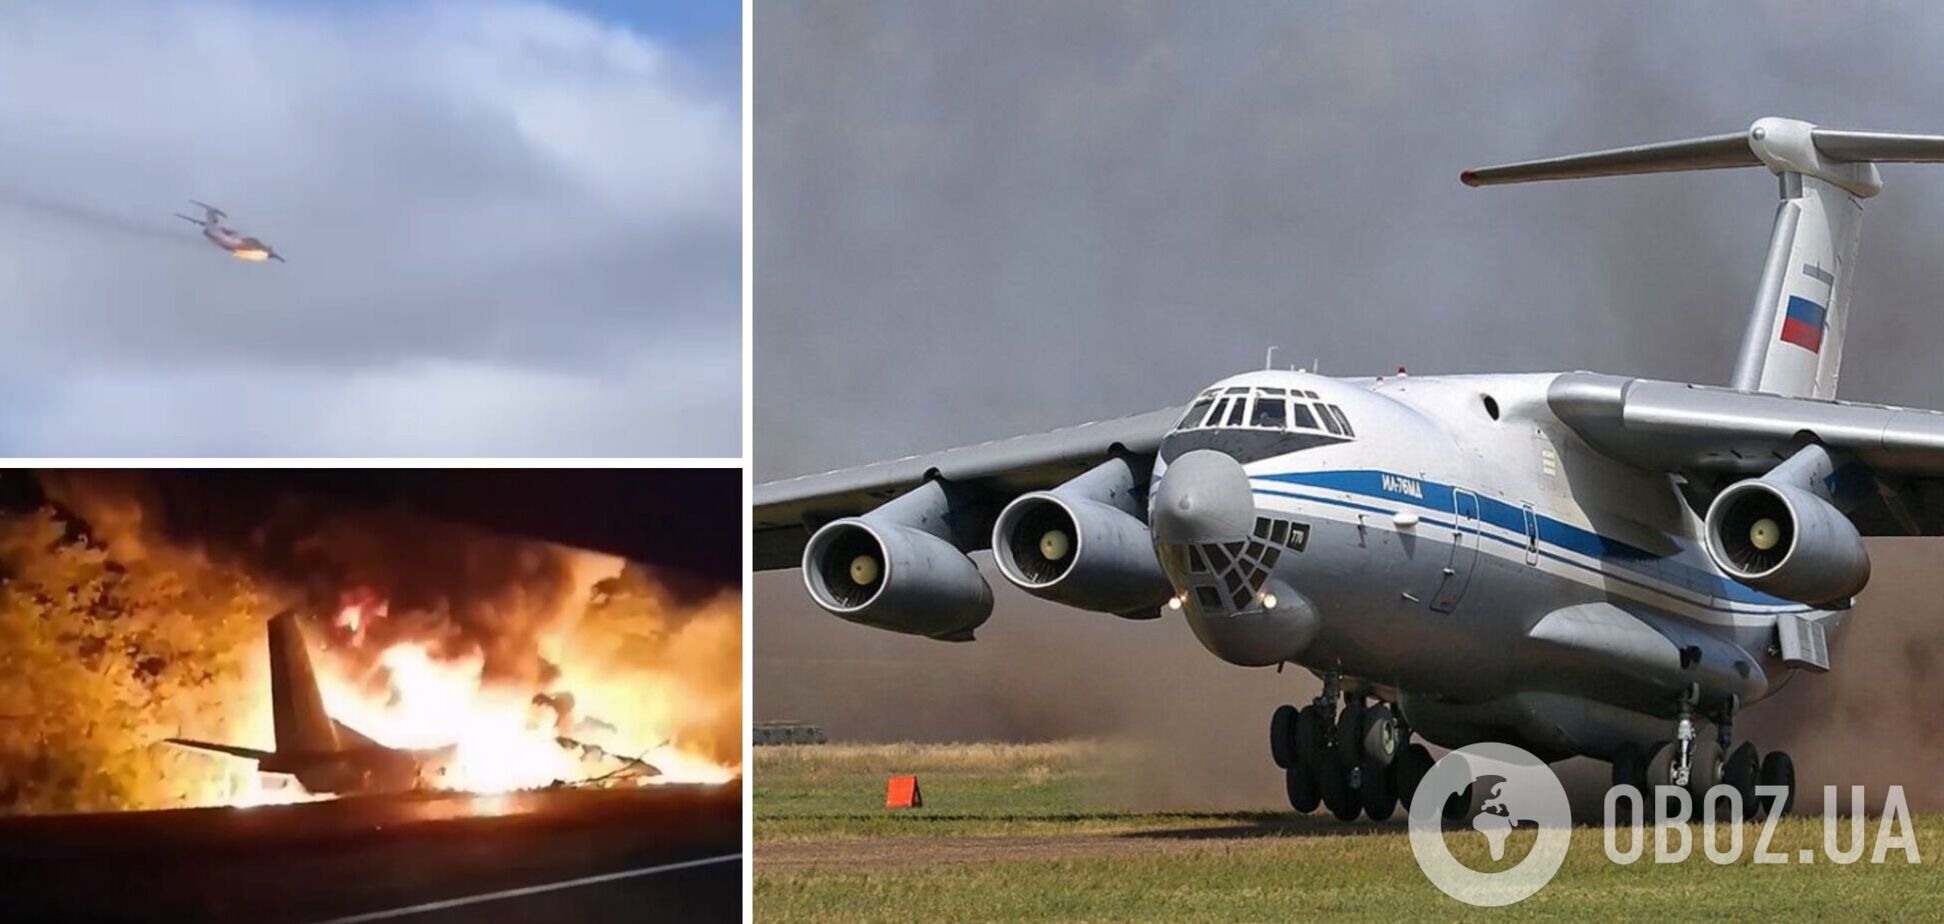 Стало известно, сколько людей было на борту упавшего в России военного Ил-76